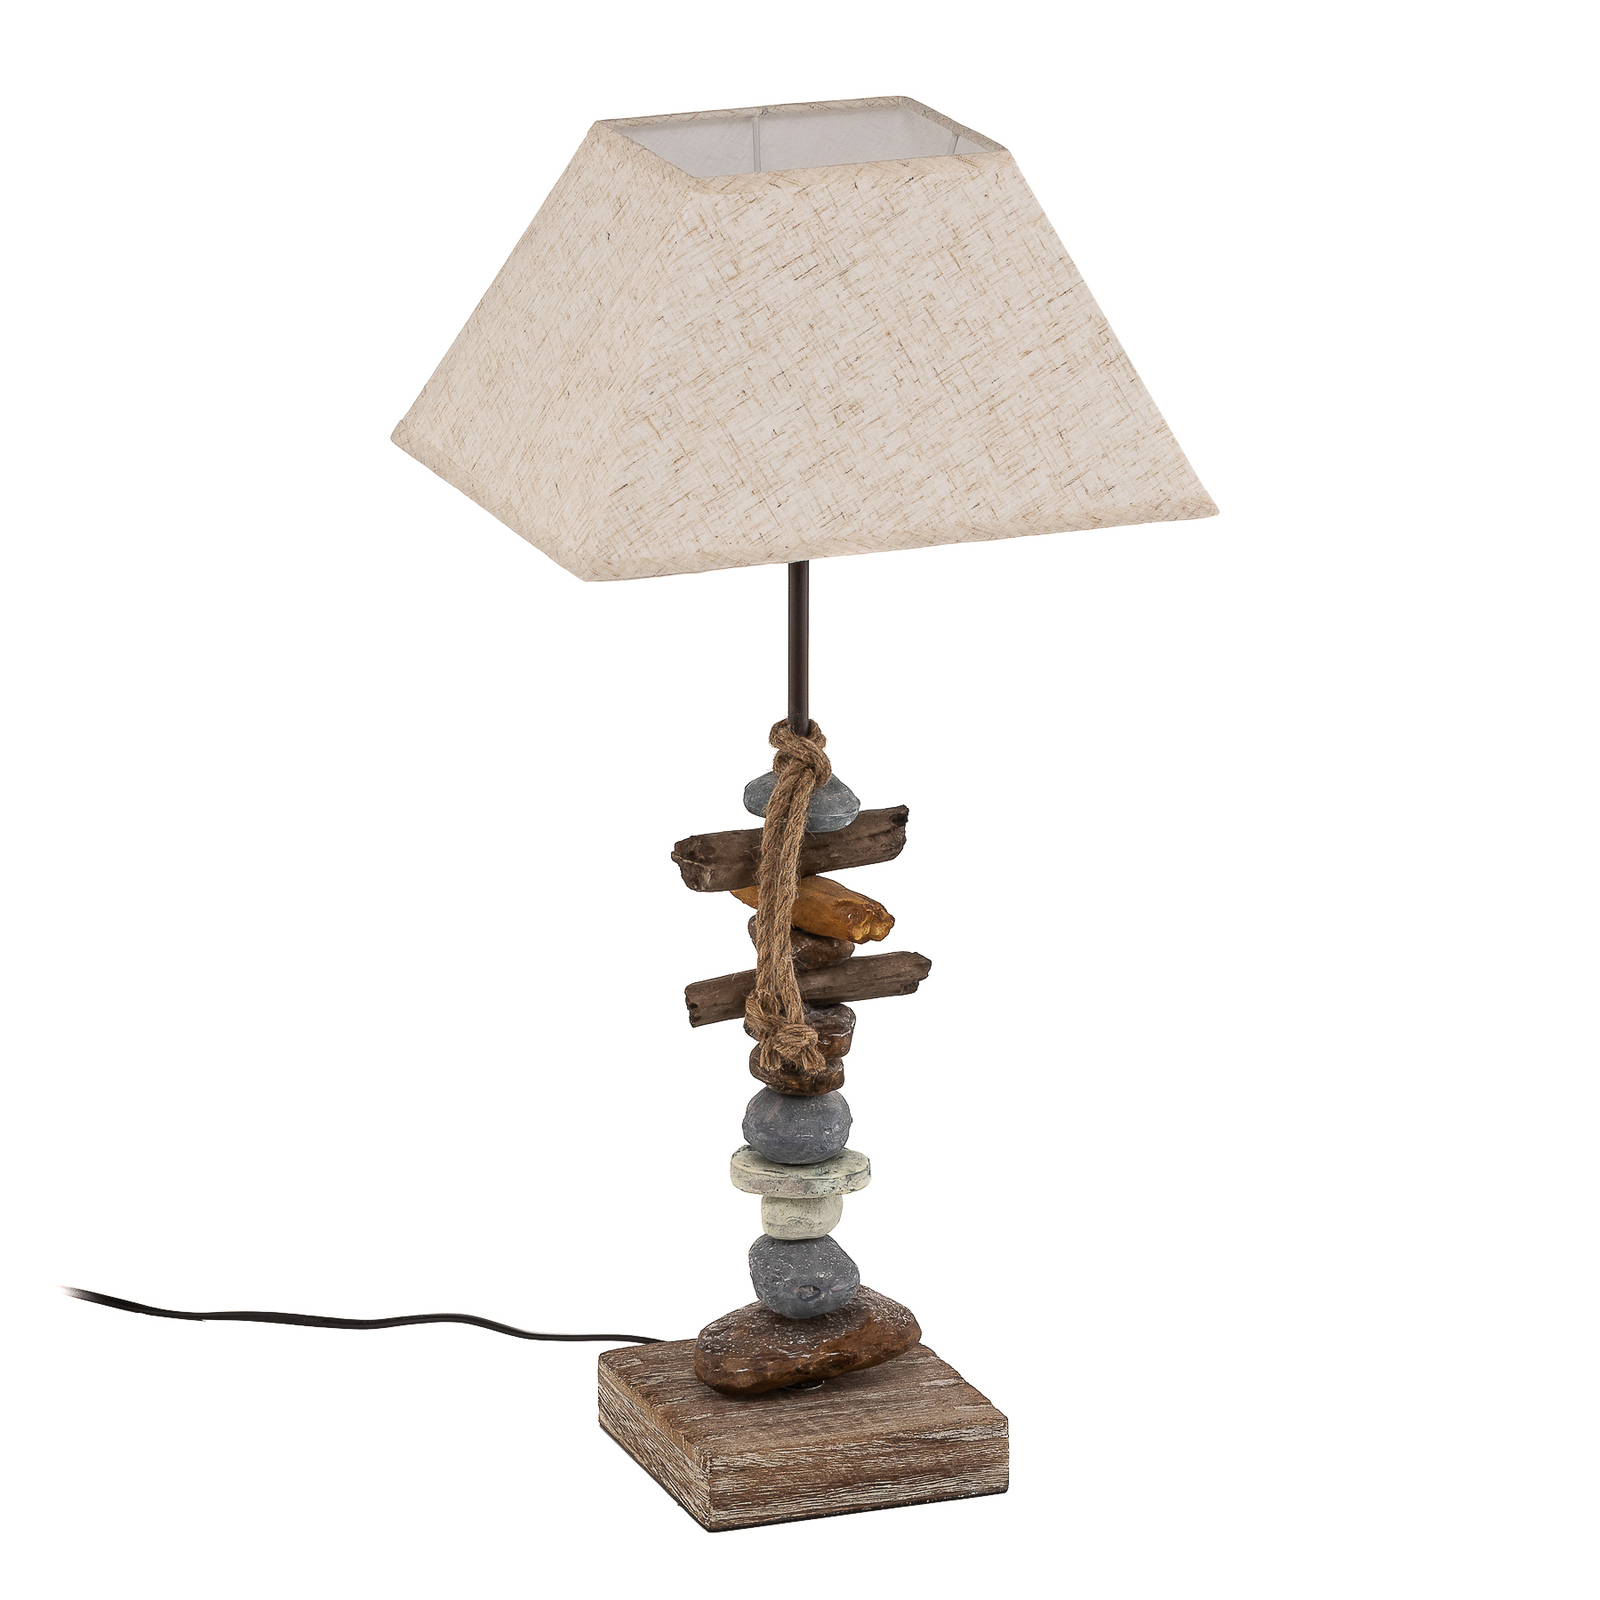 Seregon tafellamp met stenen decoratie, hoogte 63 cm